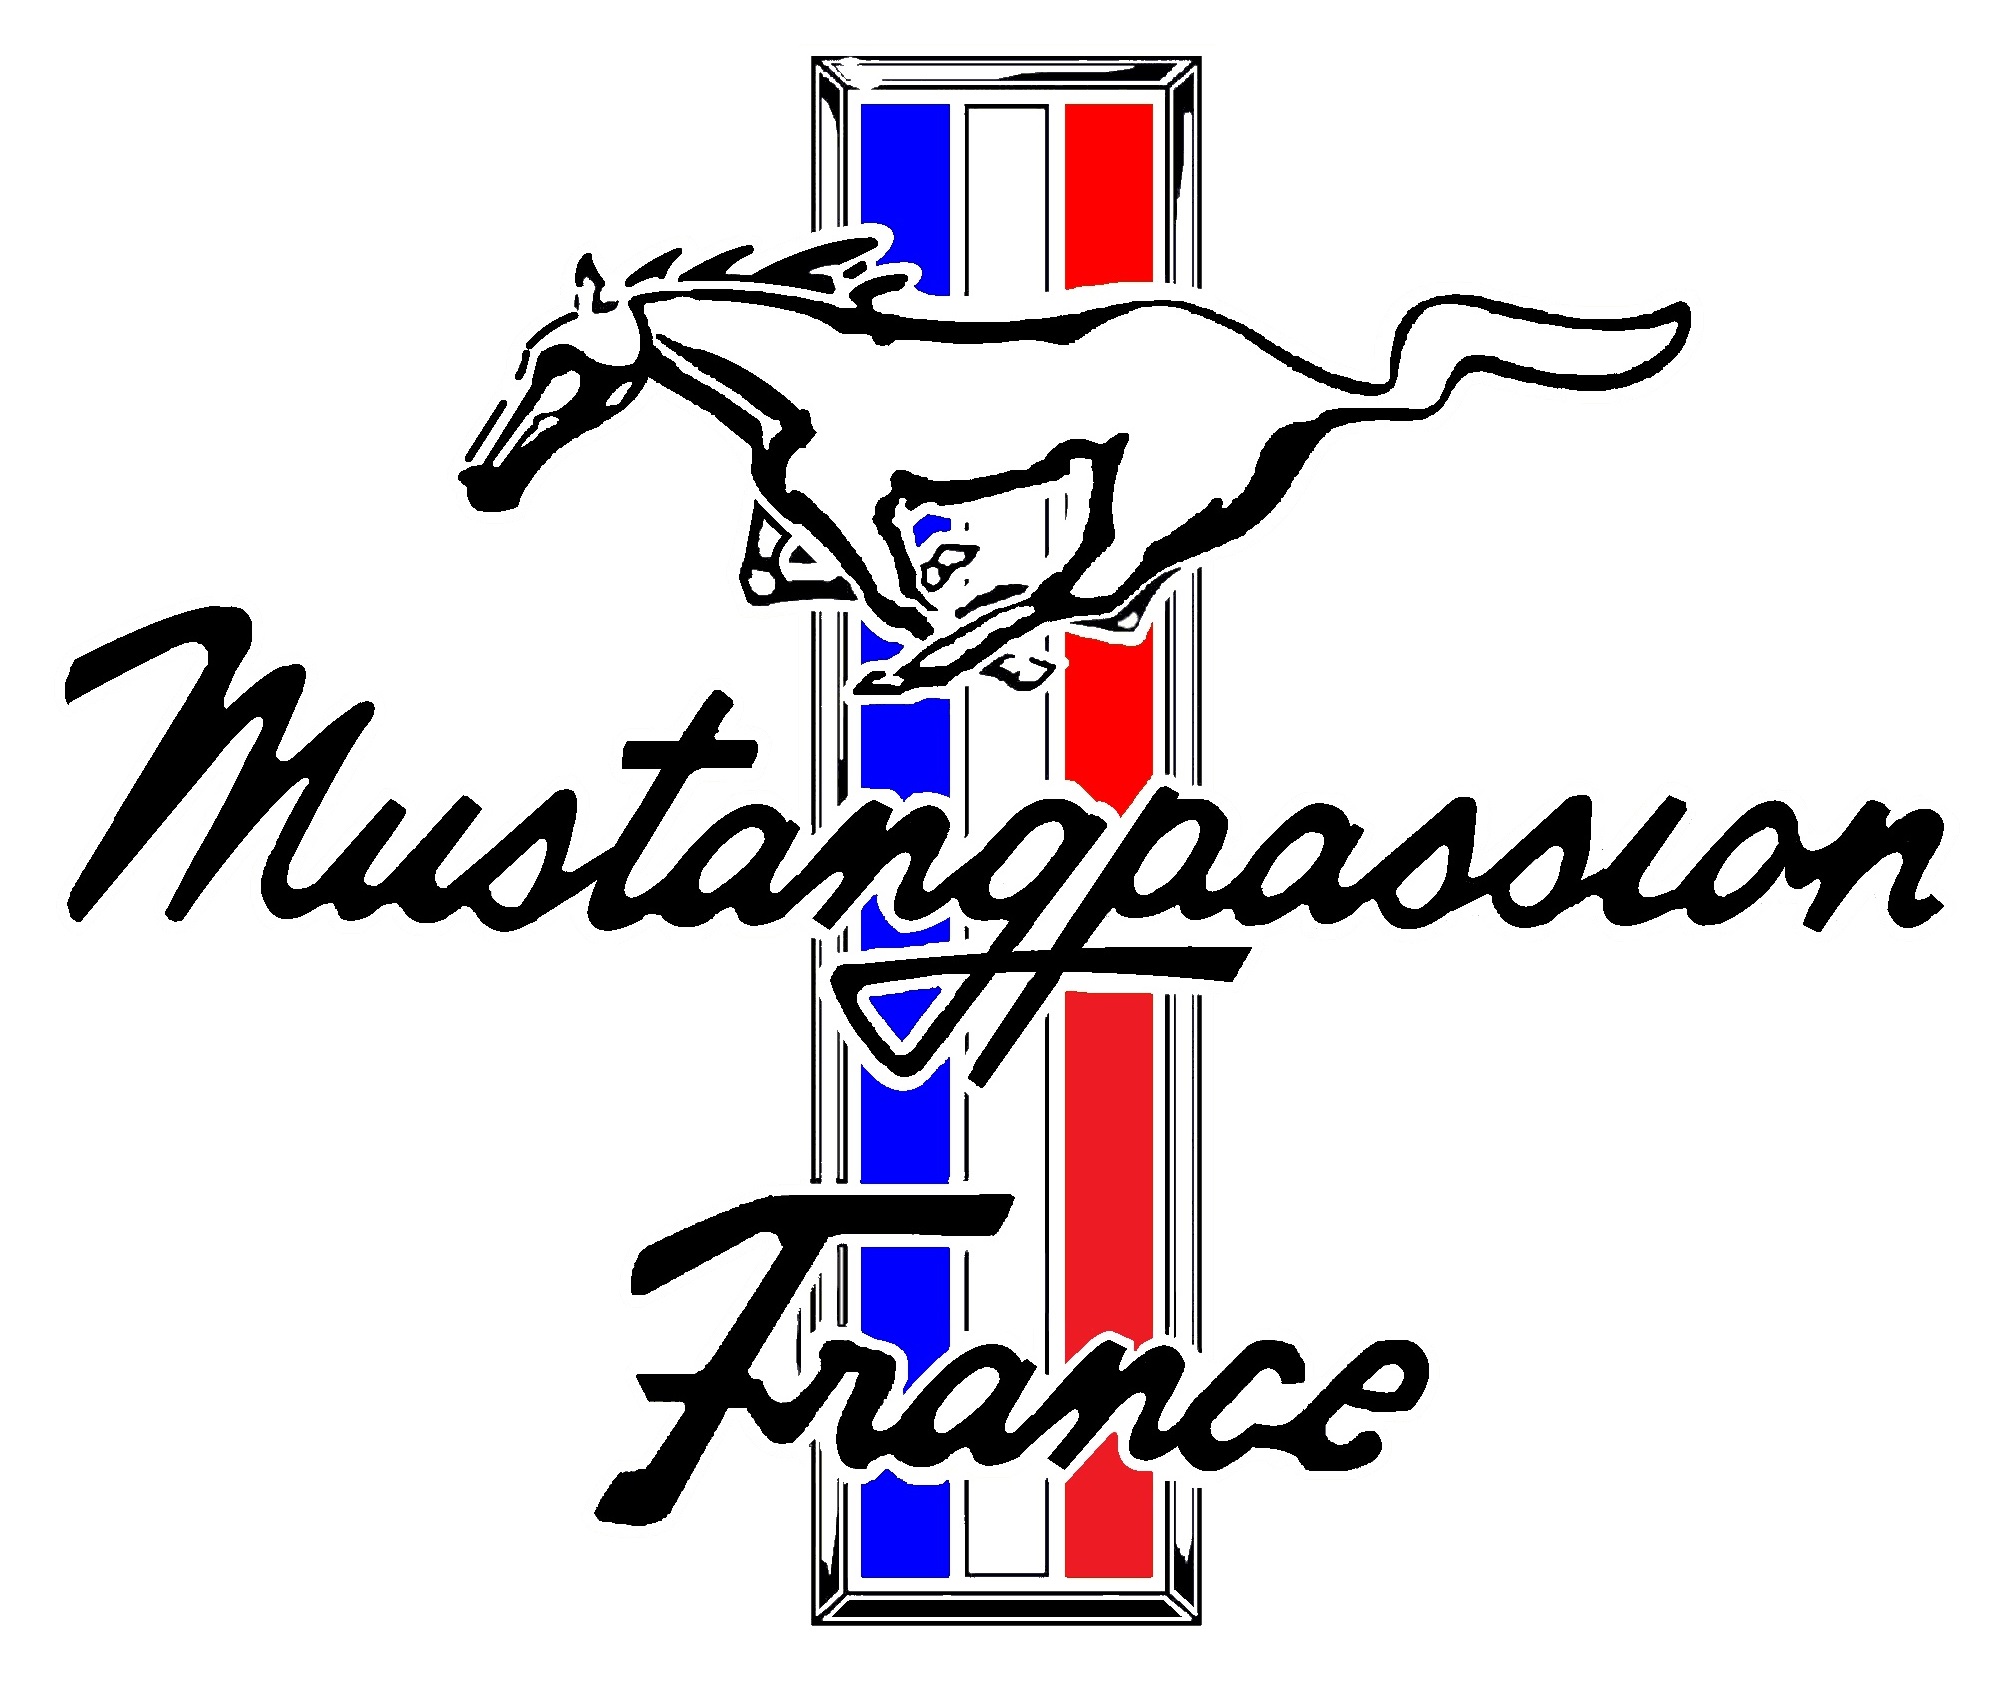 MUSTANGPASSION-FRANCE